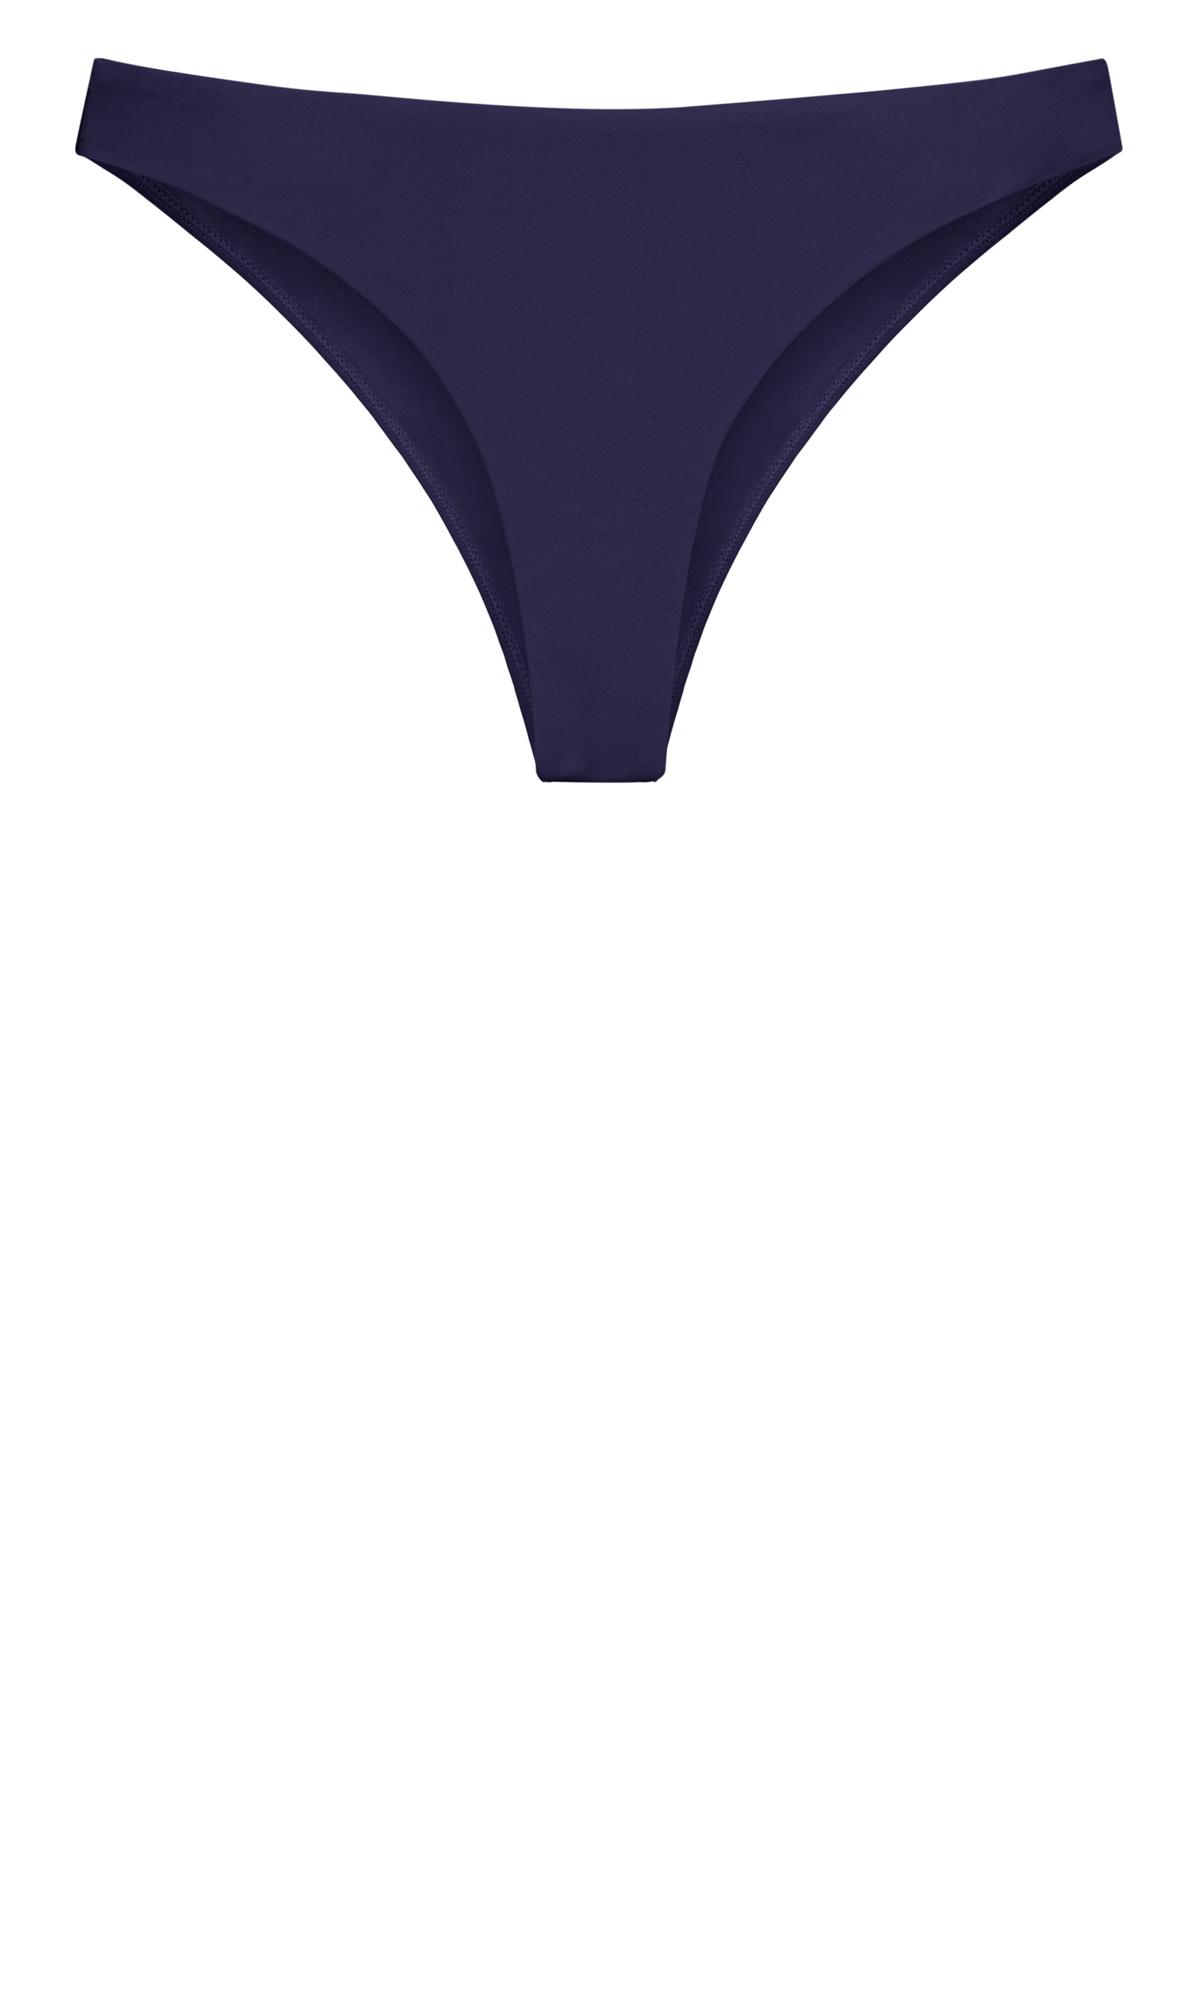 Plus Size Navy Blue Bikini Bottoms 3